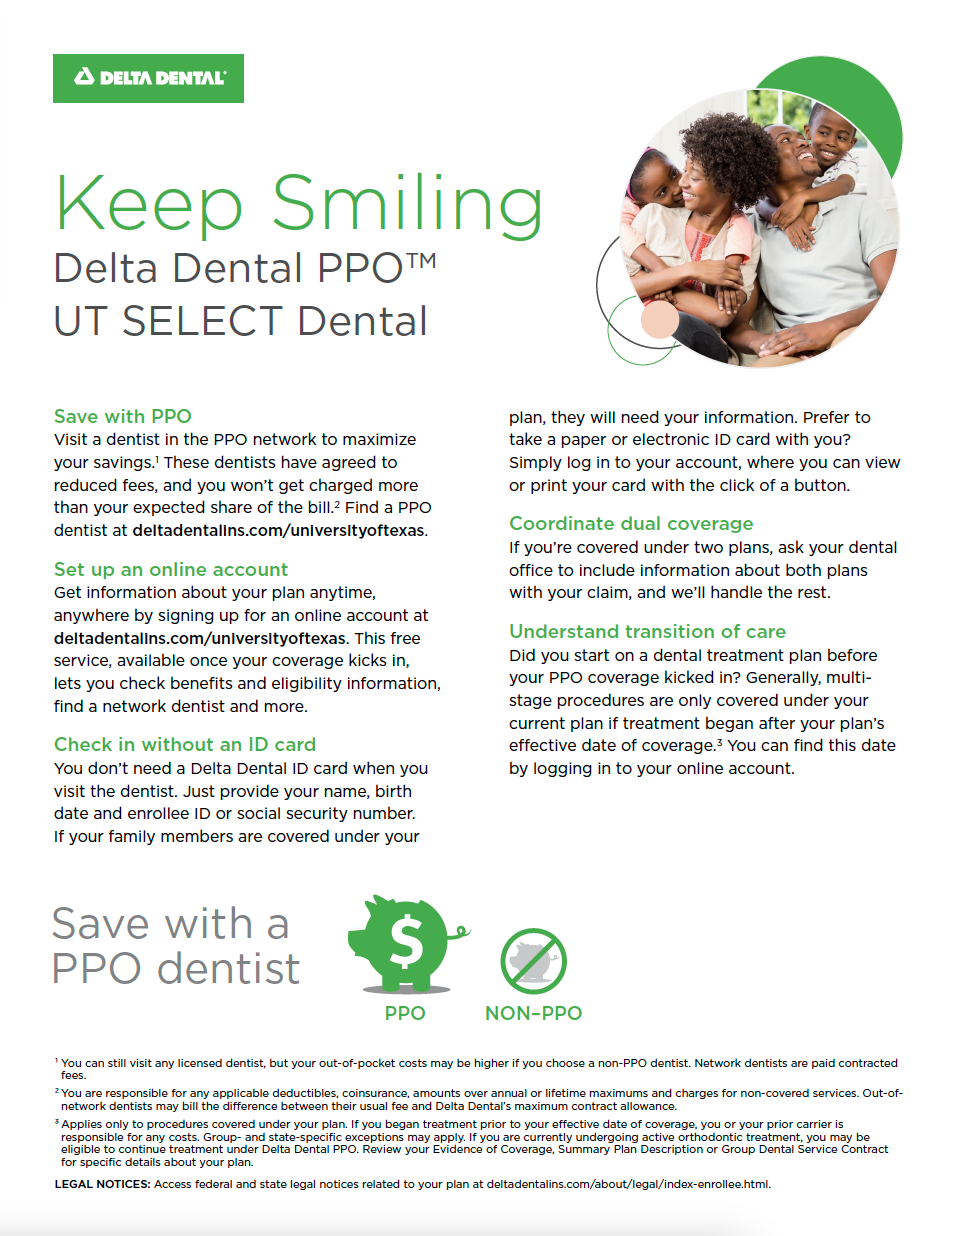 UT SELECT Dental Highlights cover sheet